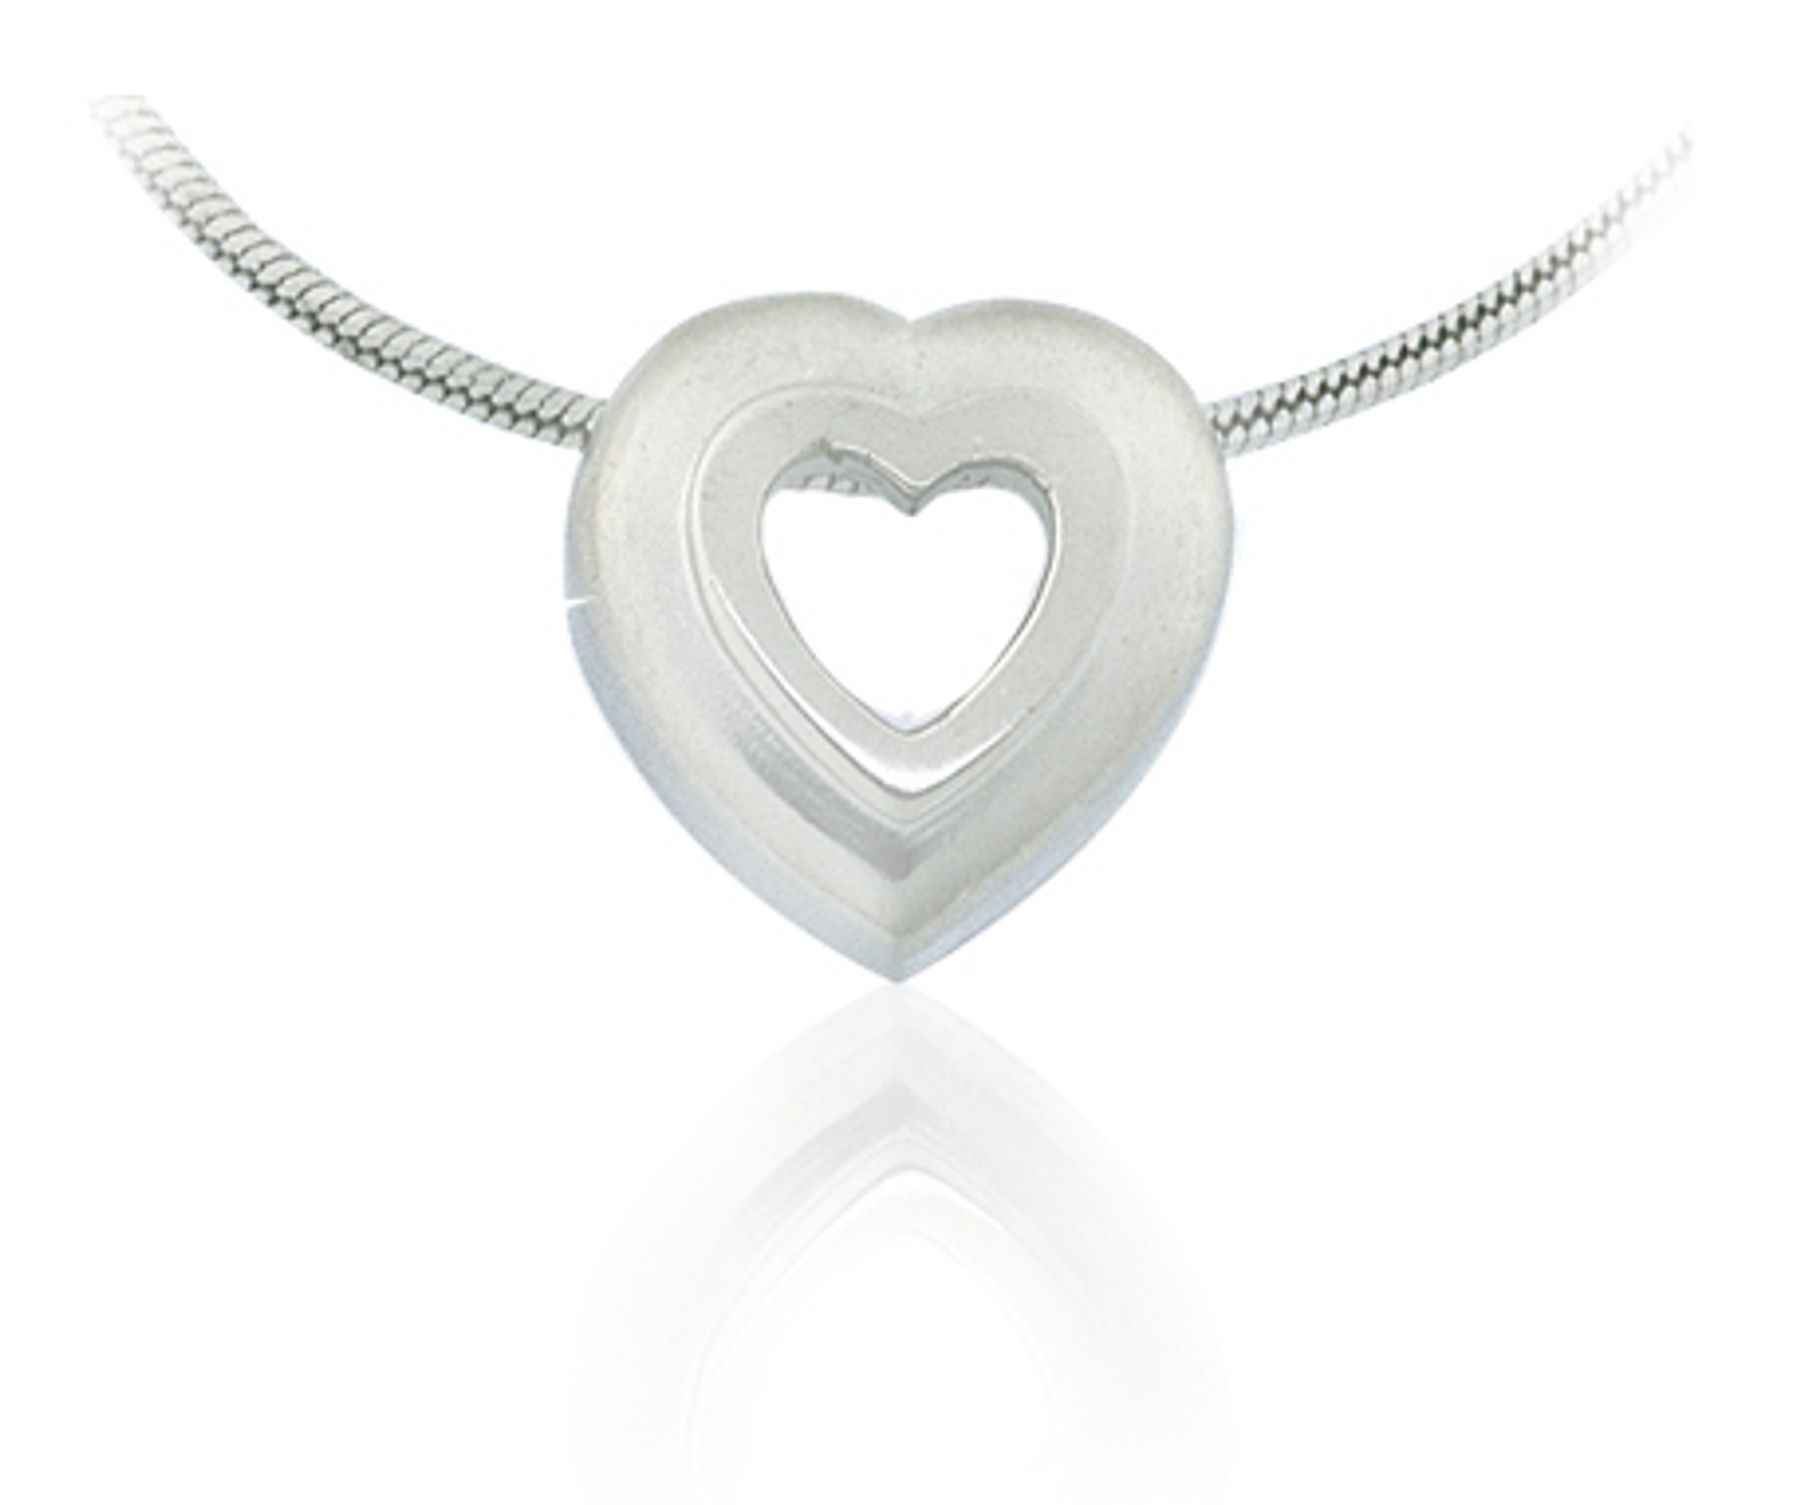 Platinum heart pendant with pendant platinum chain